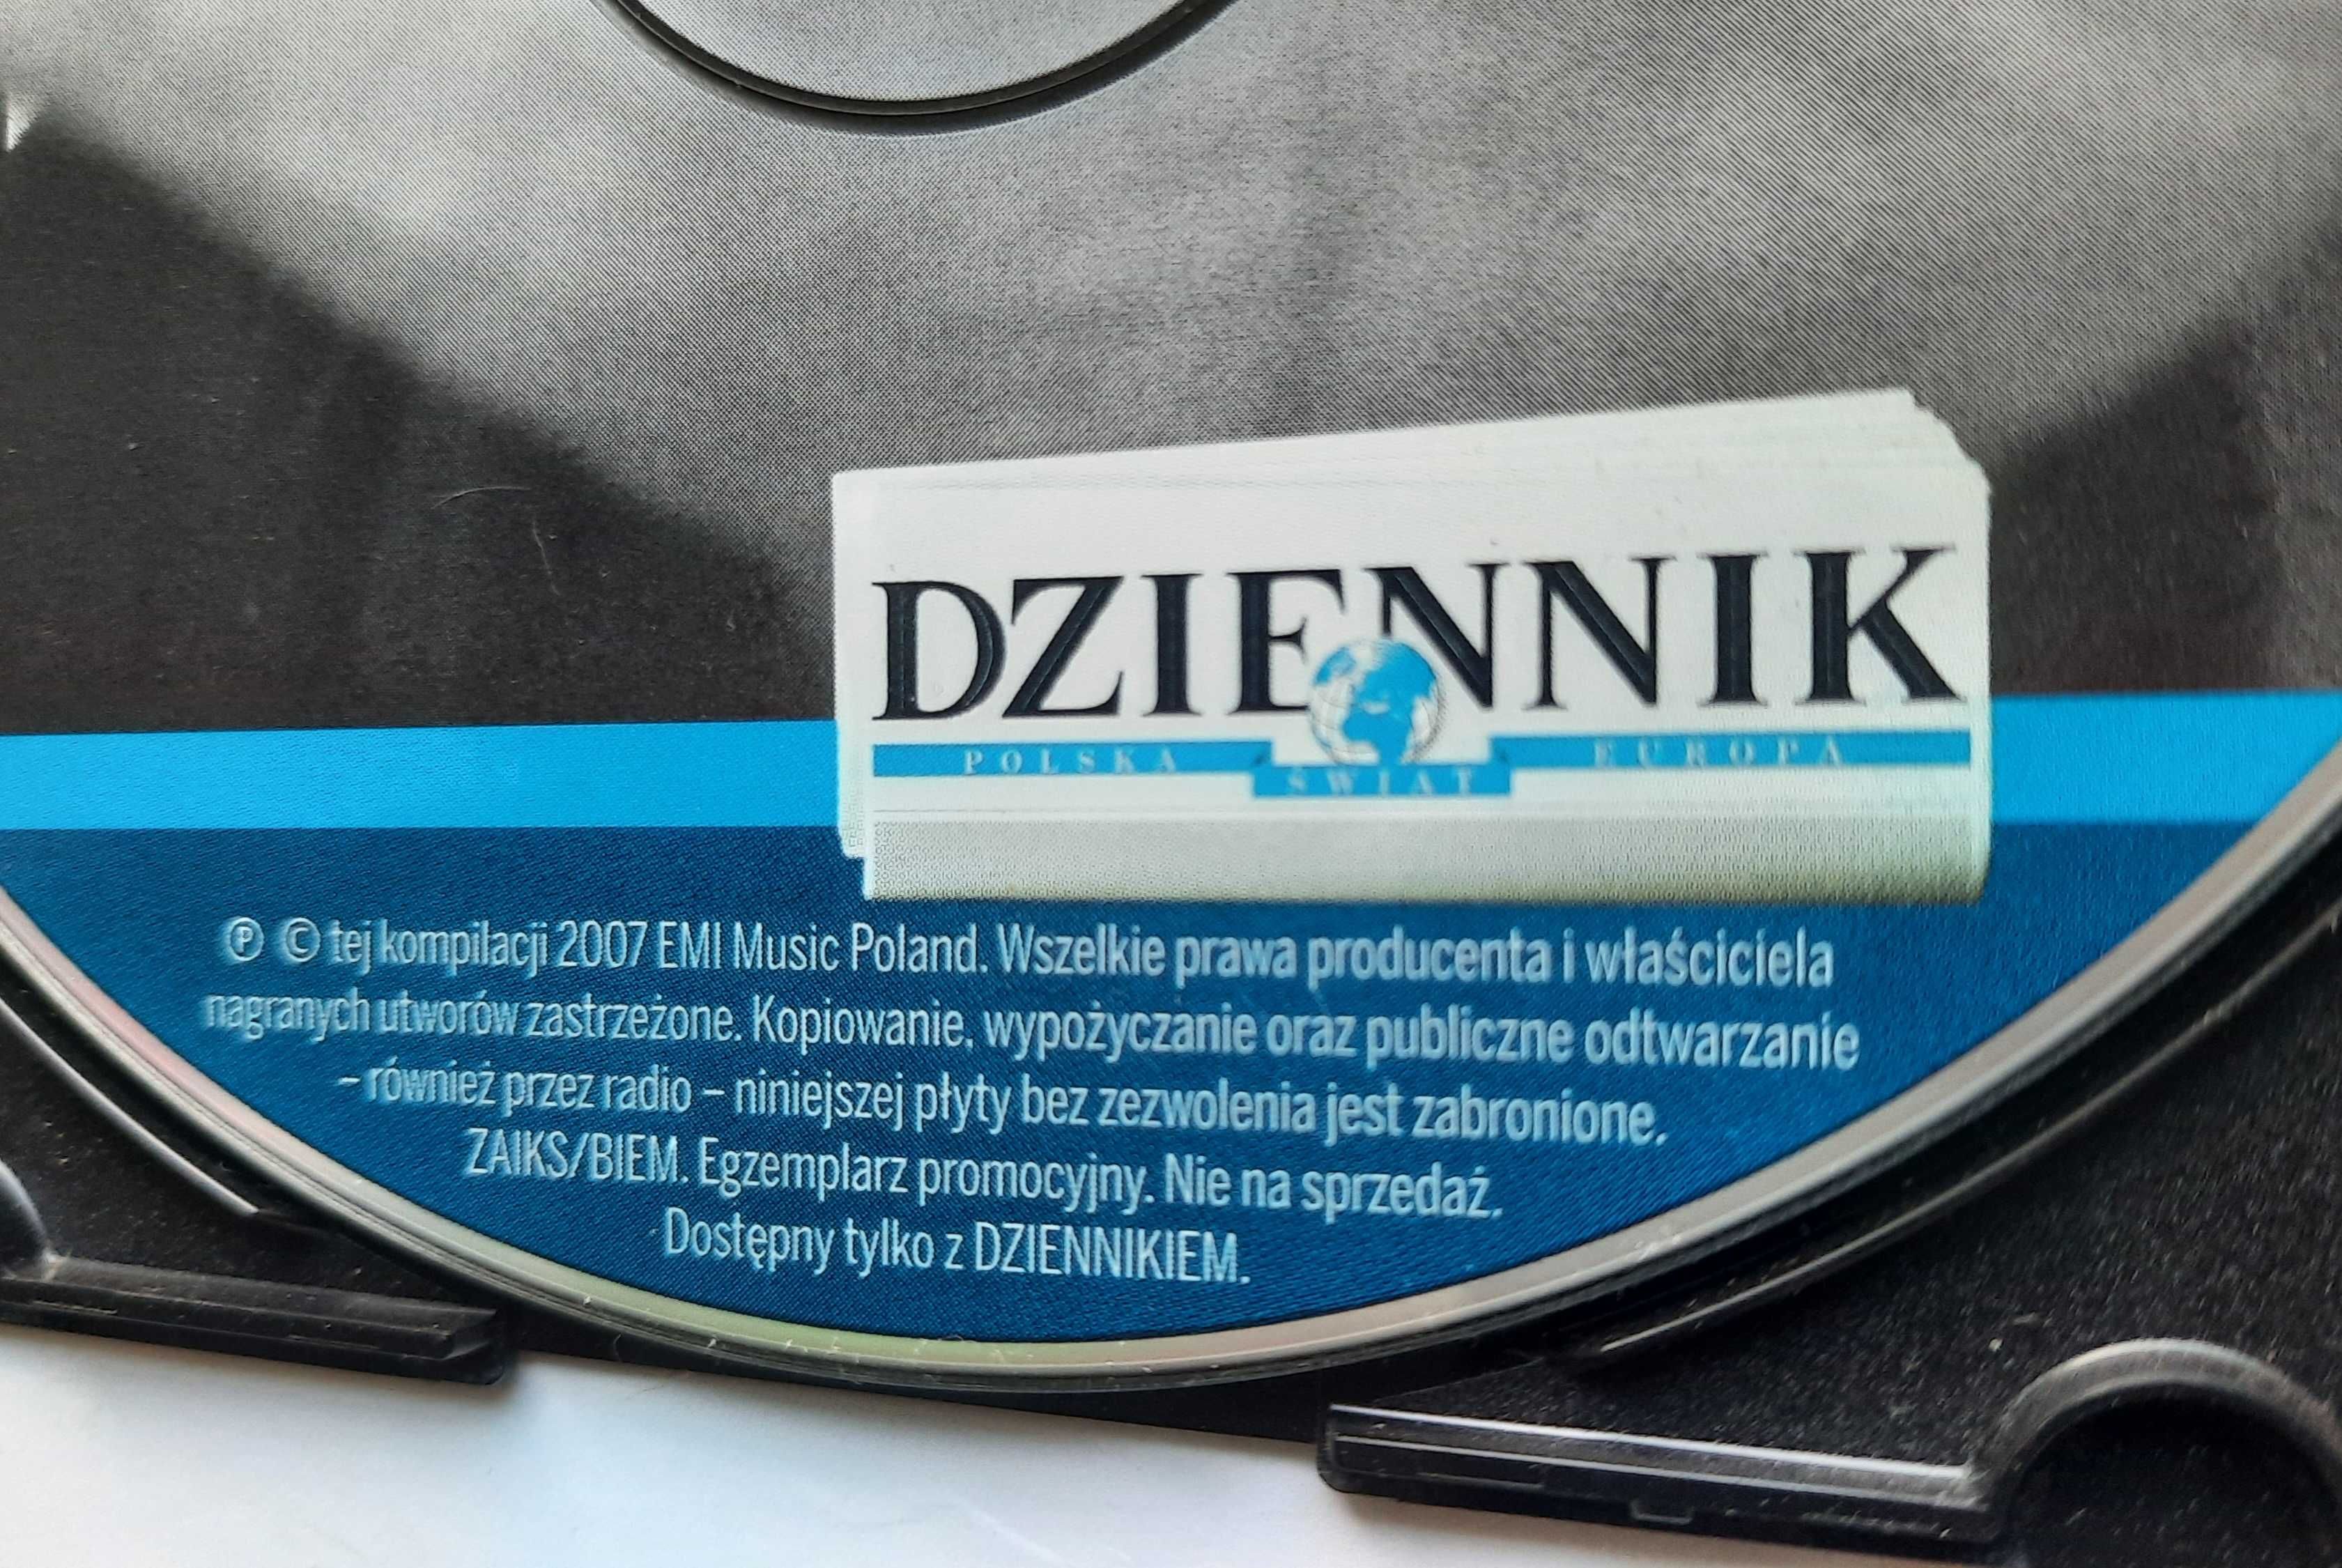 Poeci Piosenki - Stanisław Sojka płyta CD